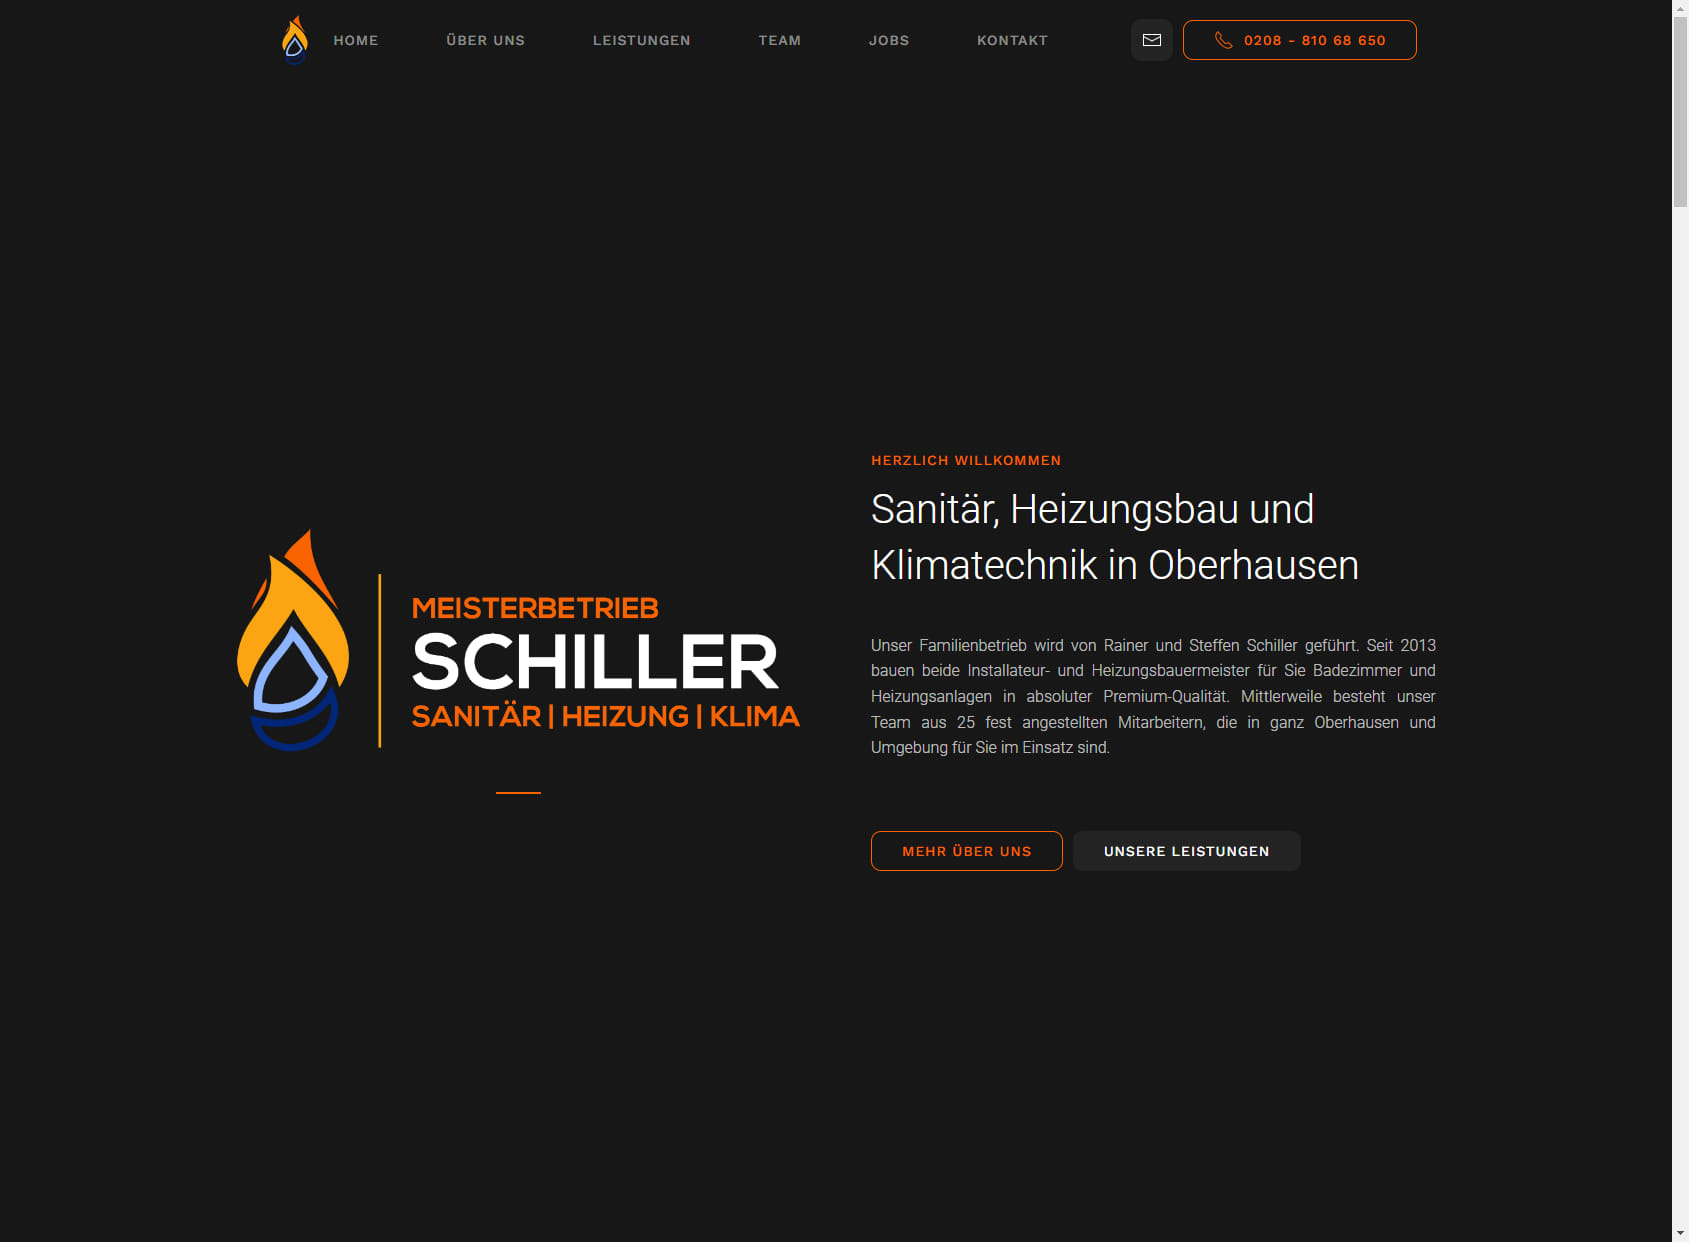 Meisterbetrieb Schiller - Sanitär, Heizung und Klimatechnik in Oberhausen